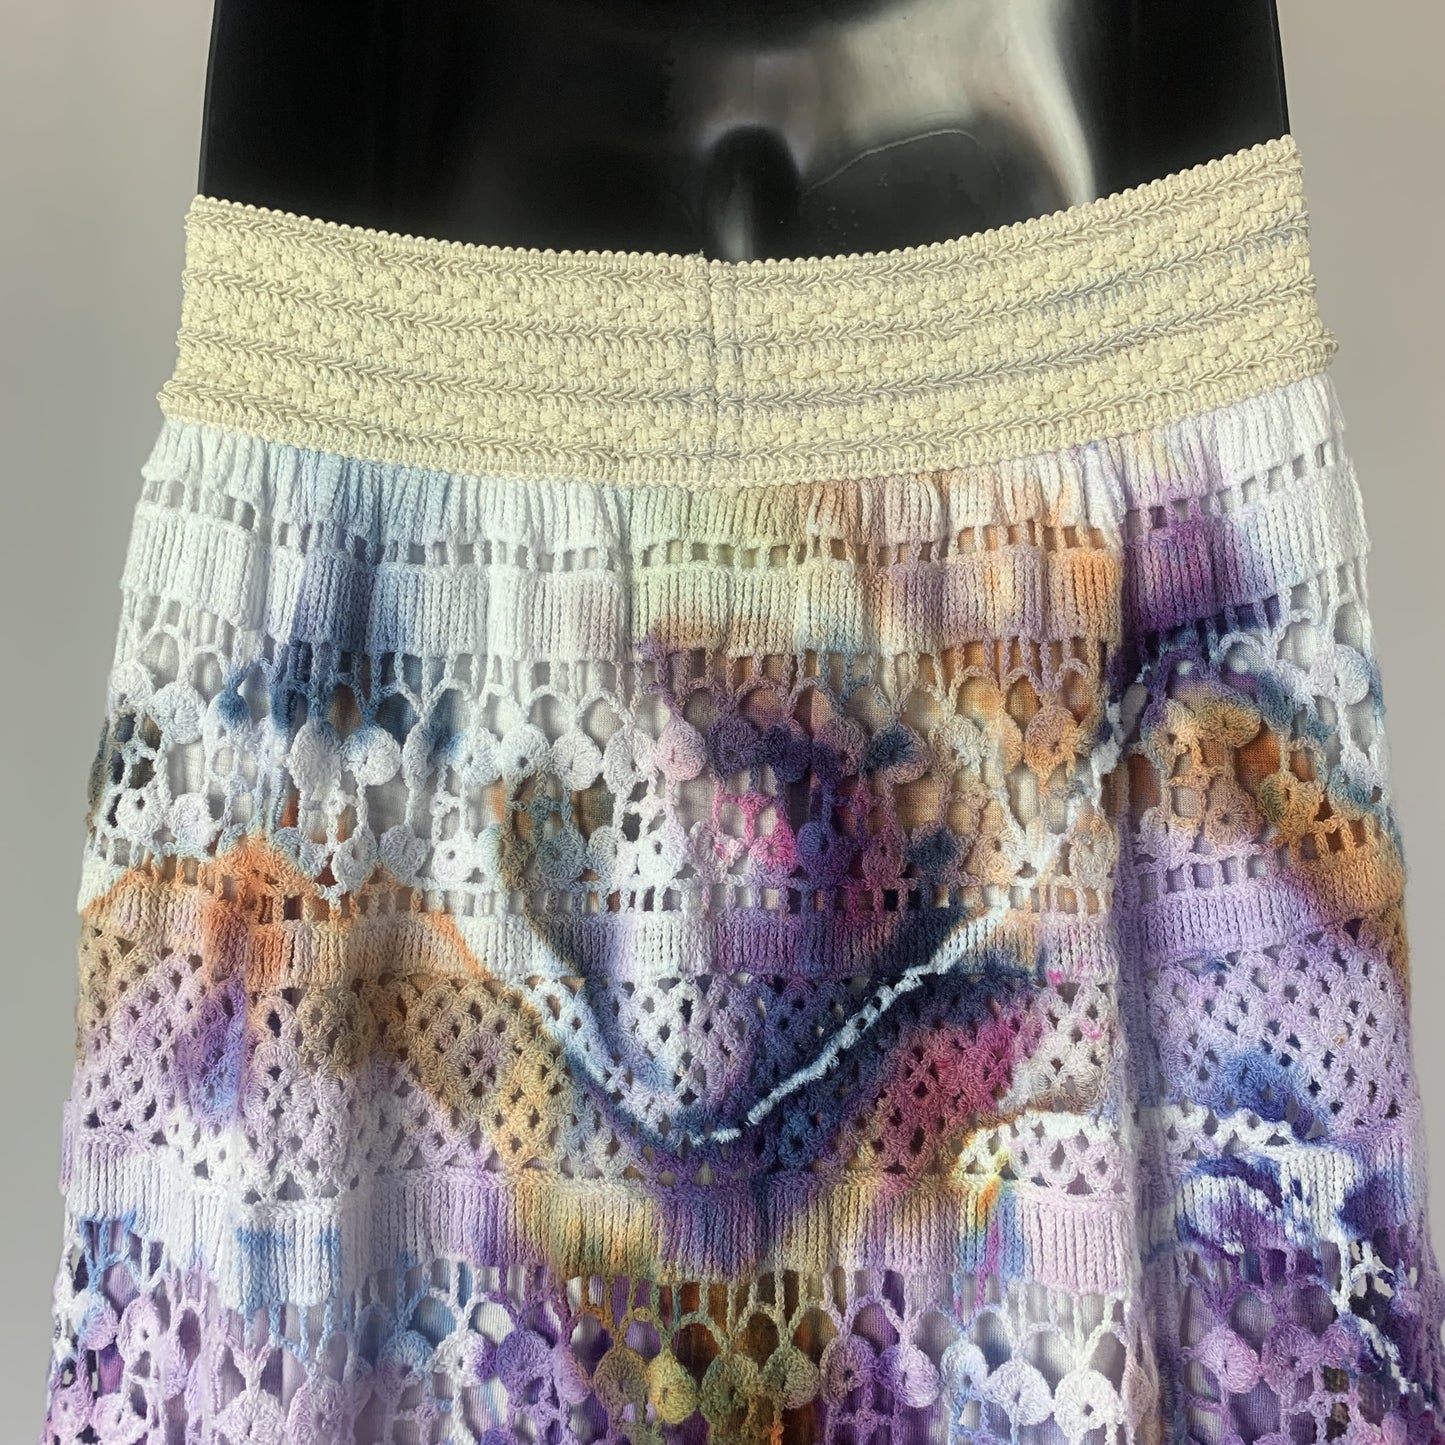 Rococo | Mid-length skirt | 28-38” waist